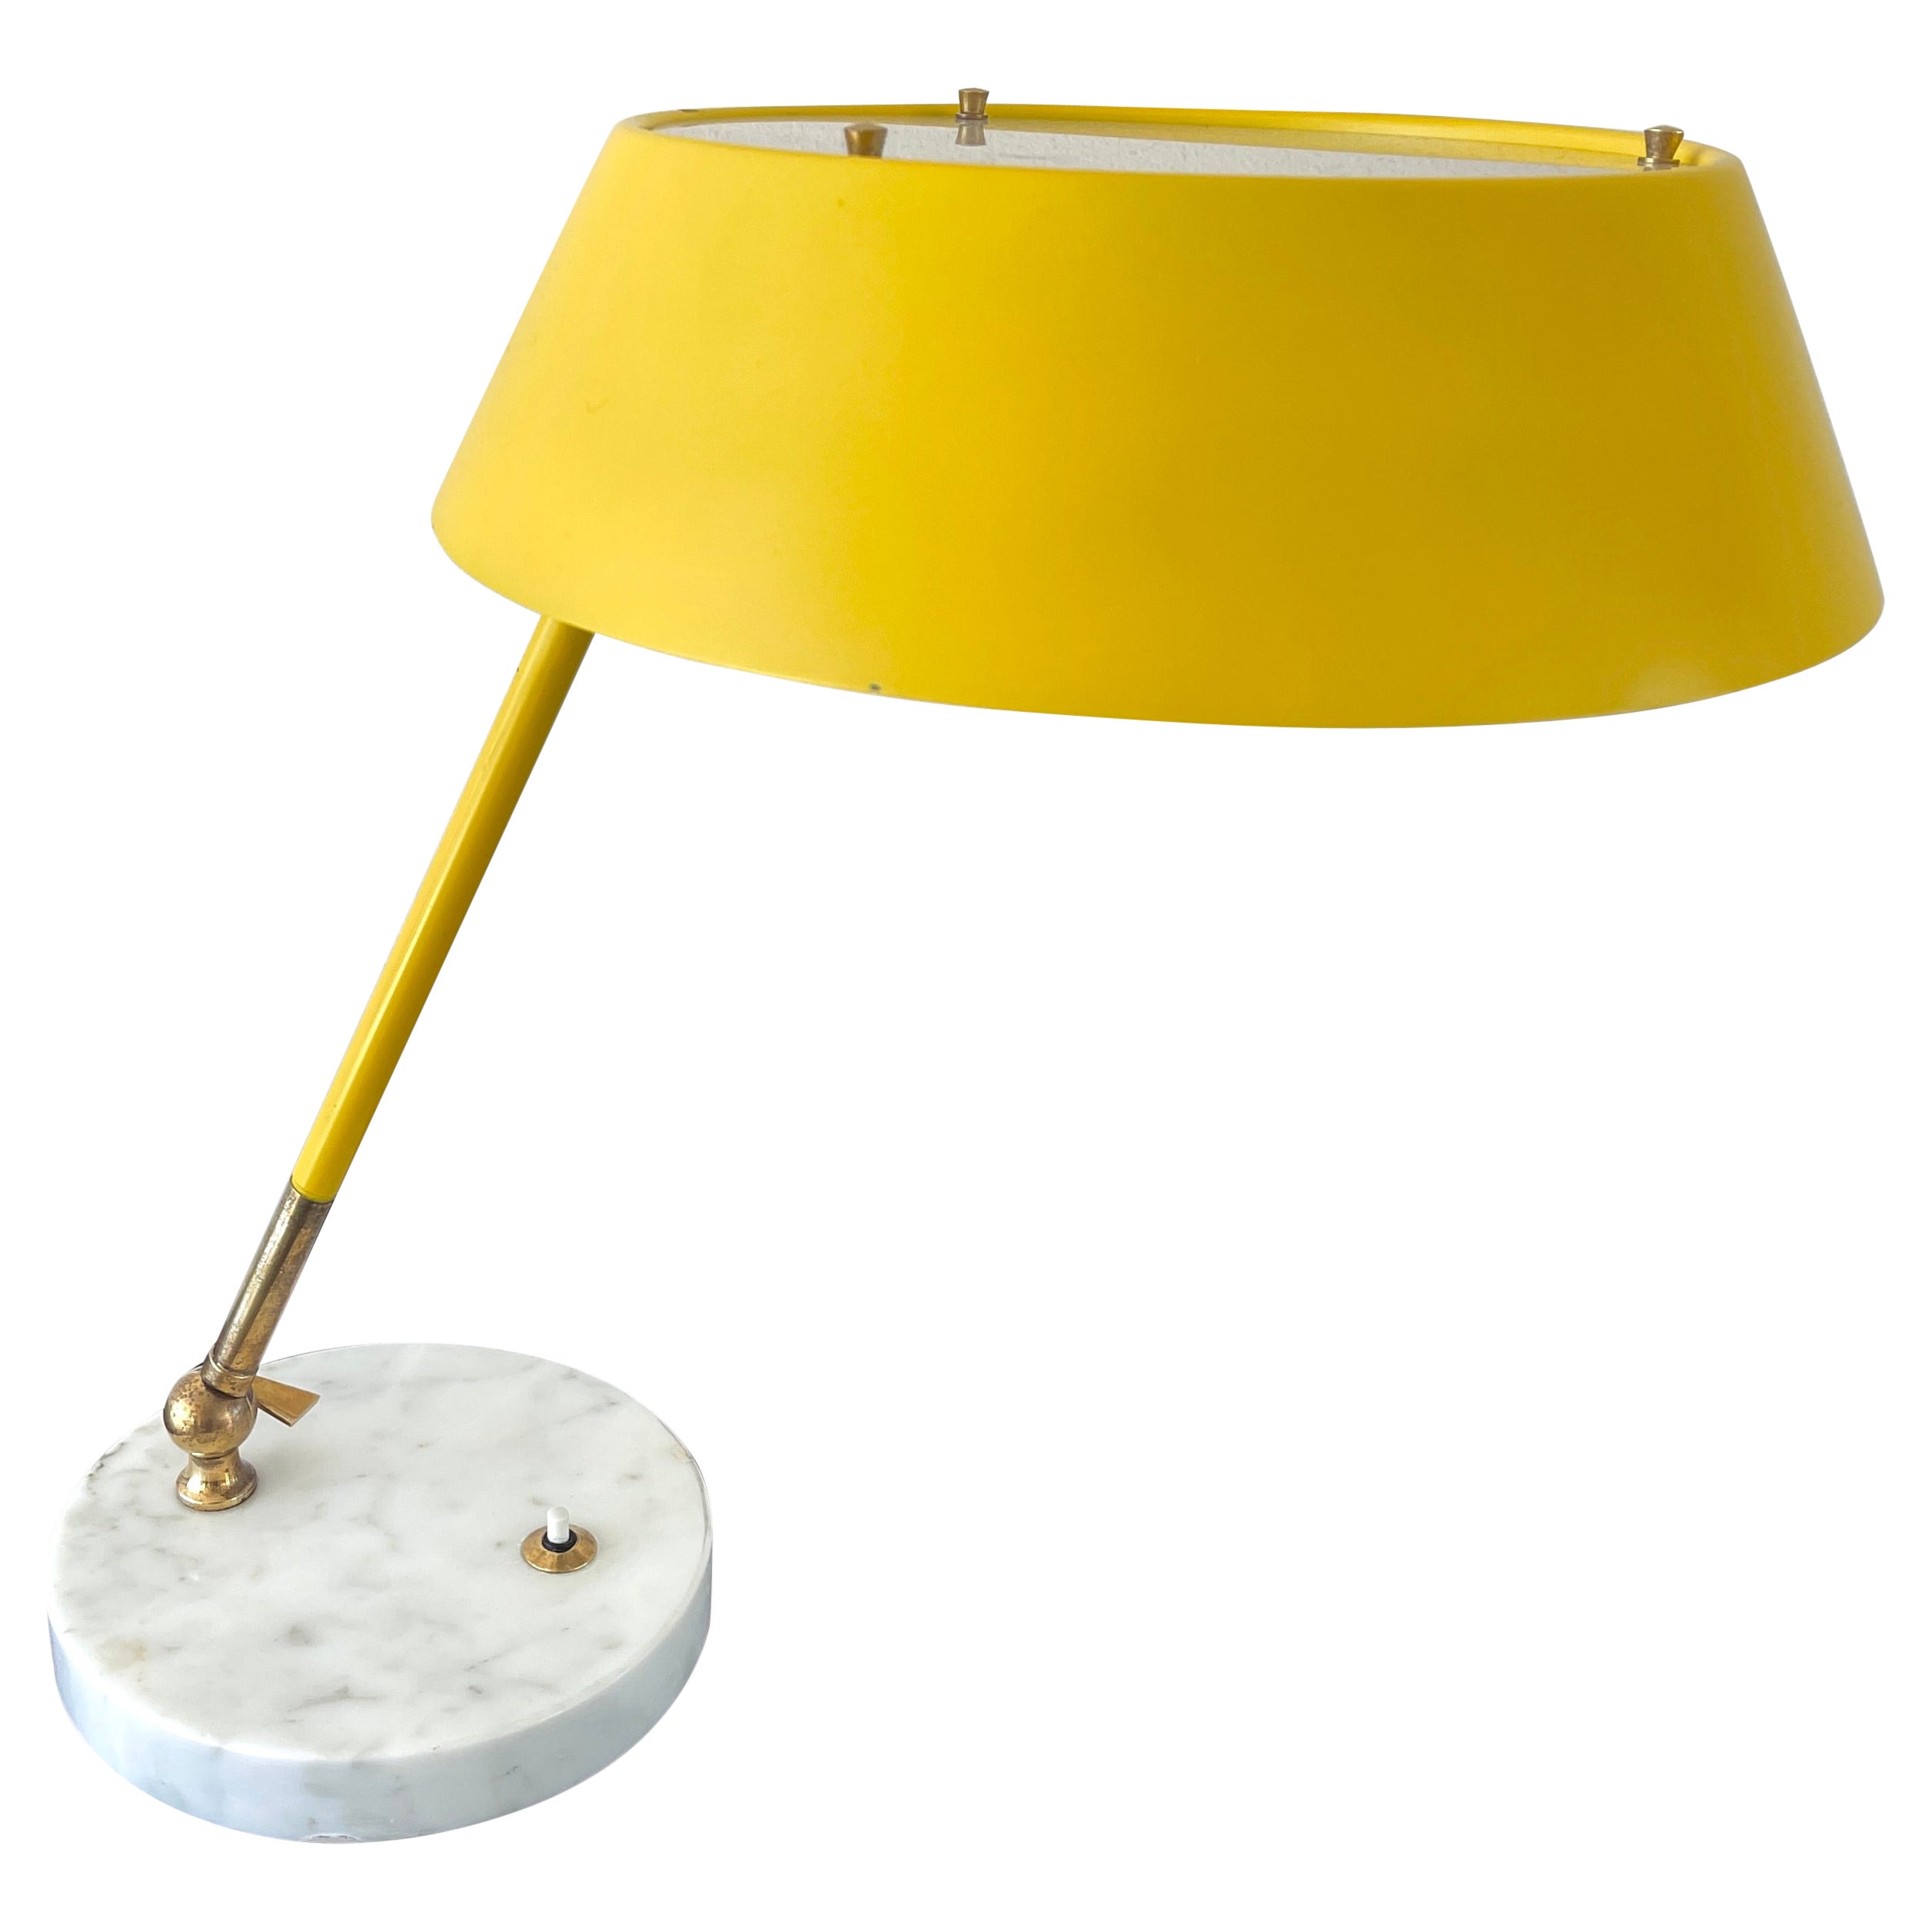 Stilux Desk Lamp